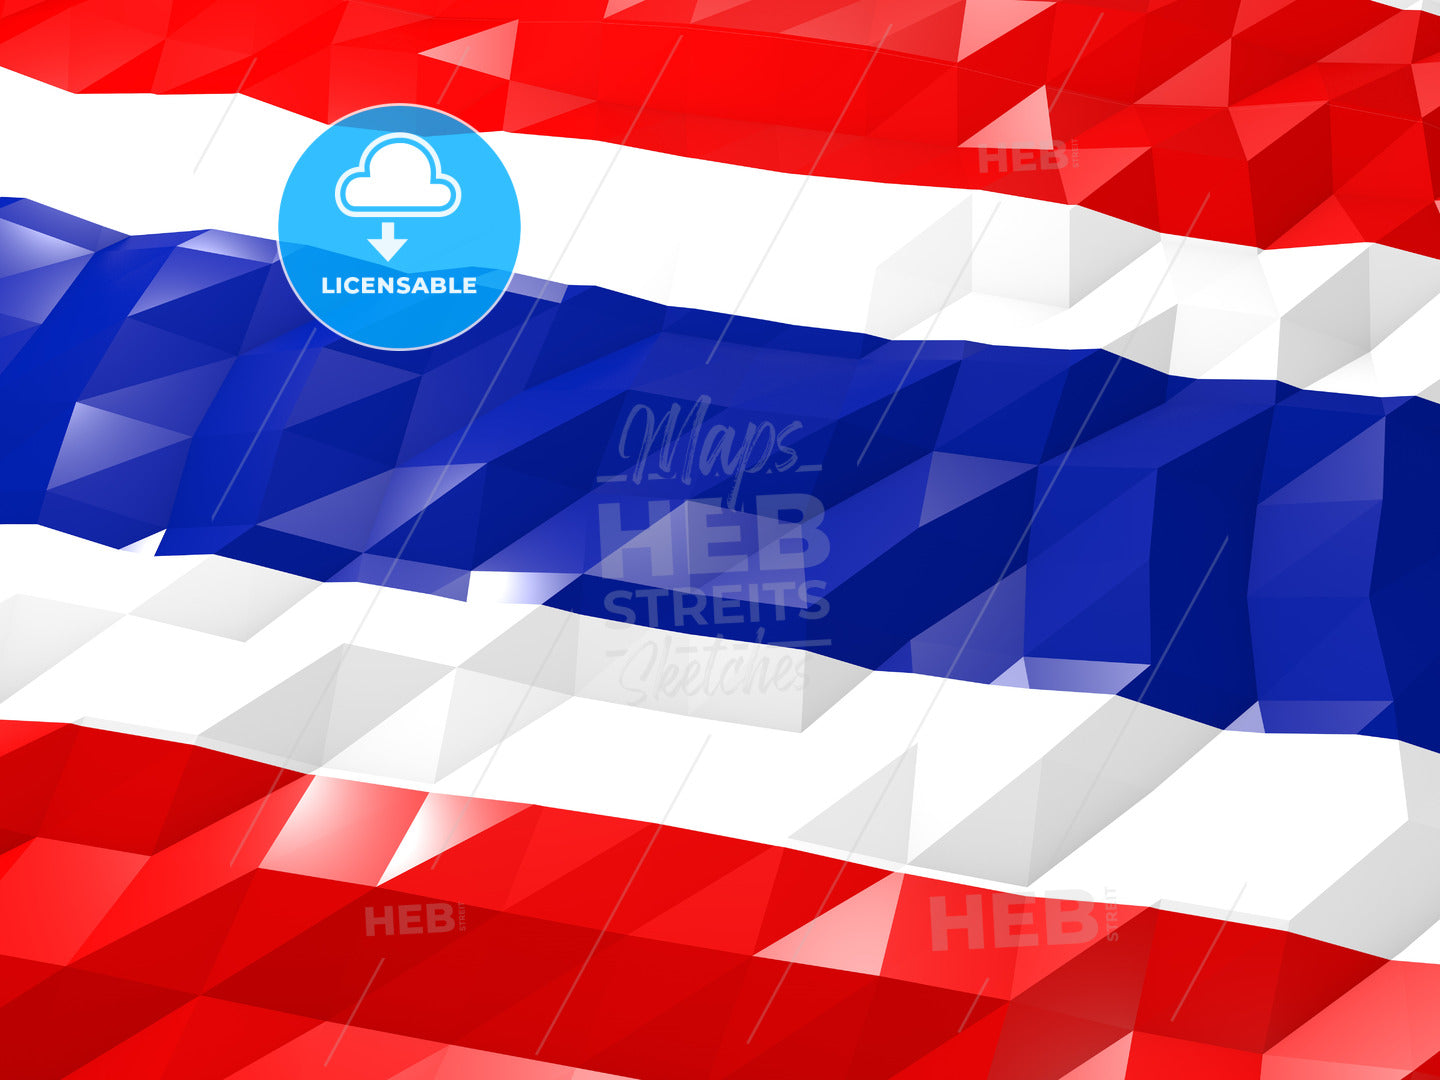 Flag of Togo 3D Wallpaper Illustration – instant download